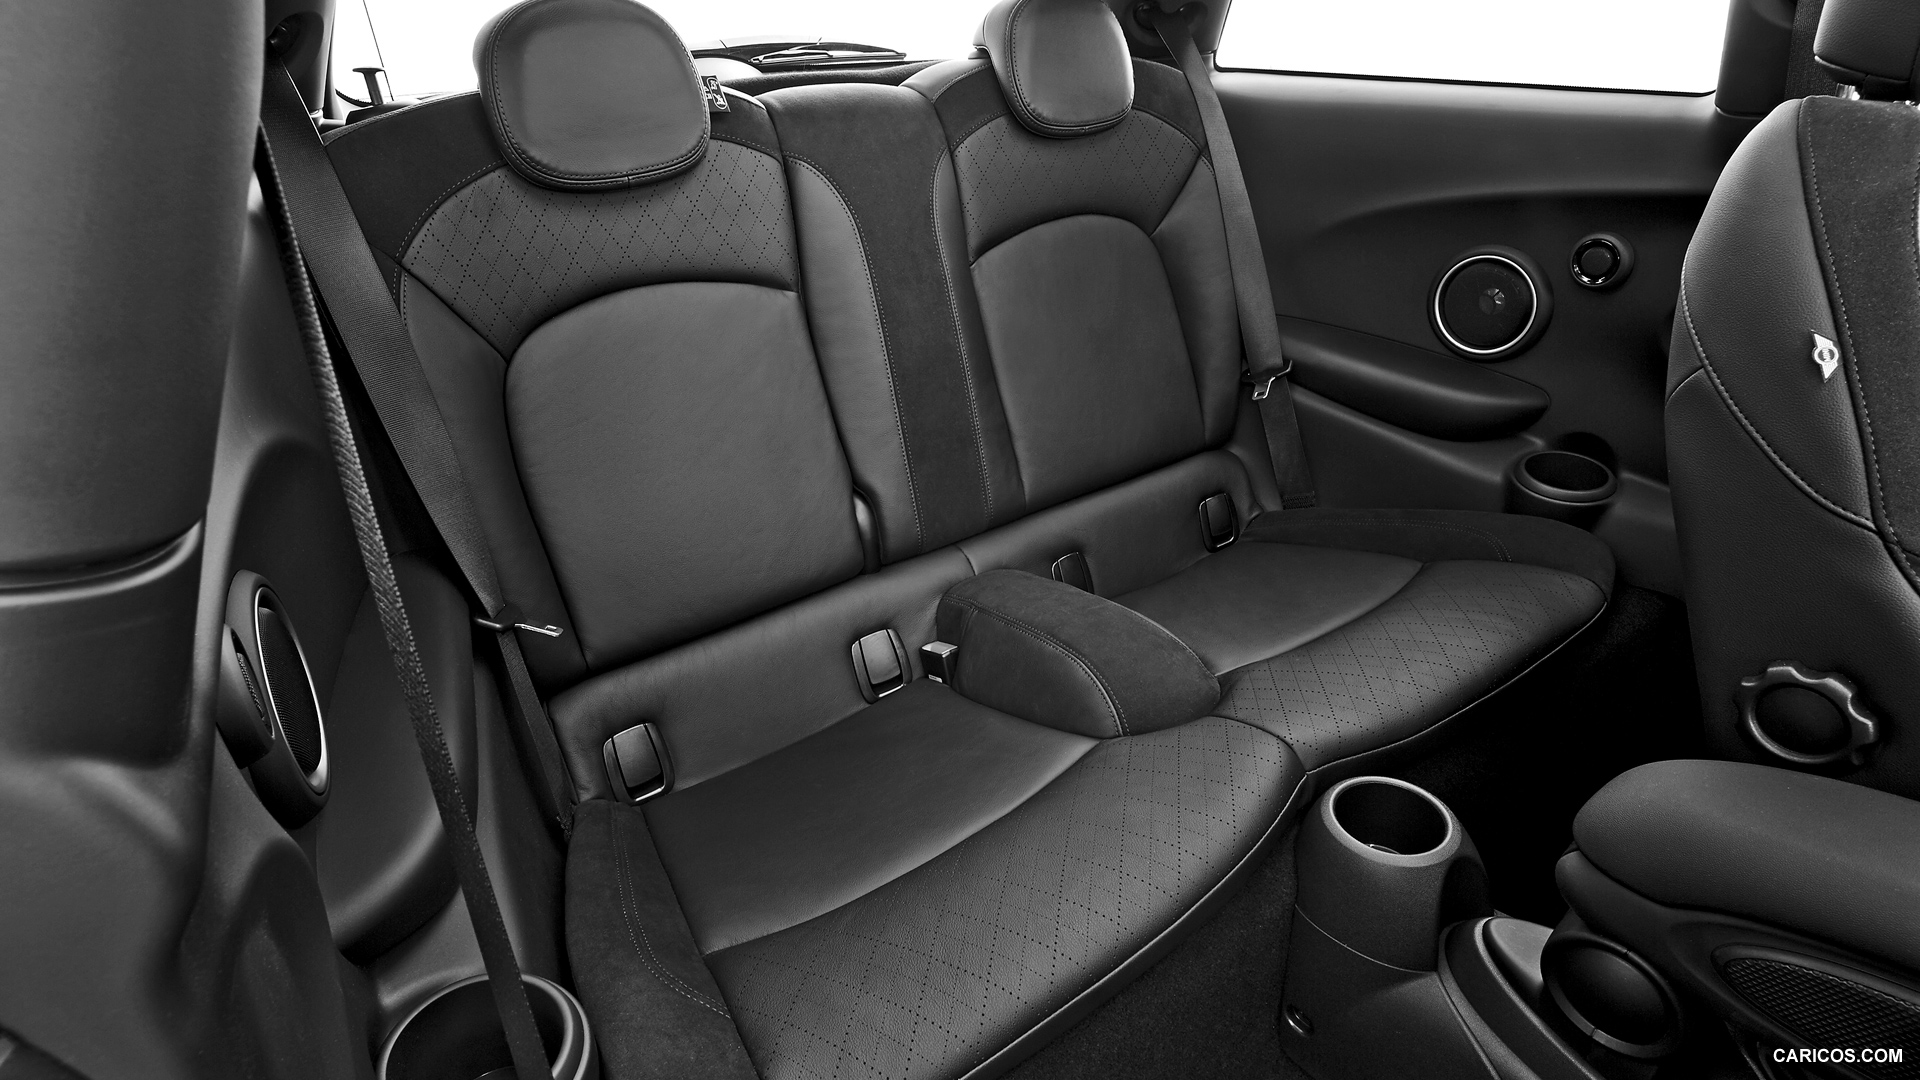 2015 Mini Cooper S Interior Rear Seats Caricos